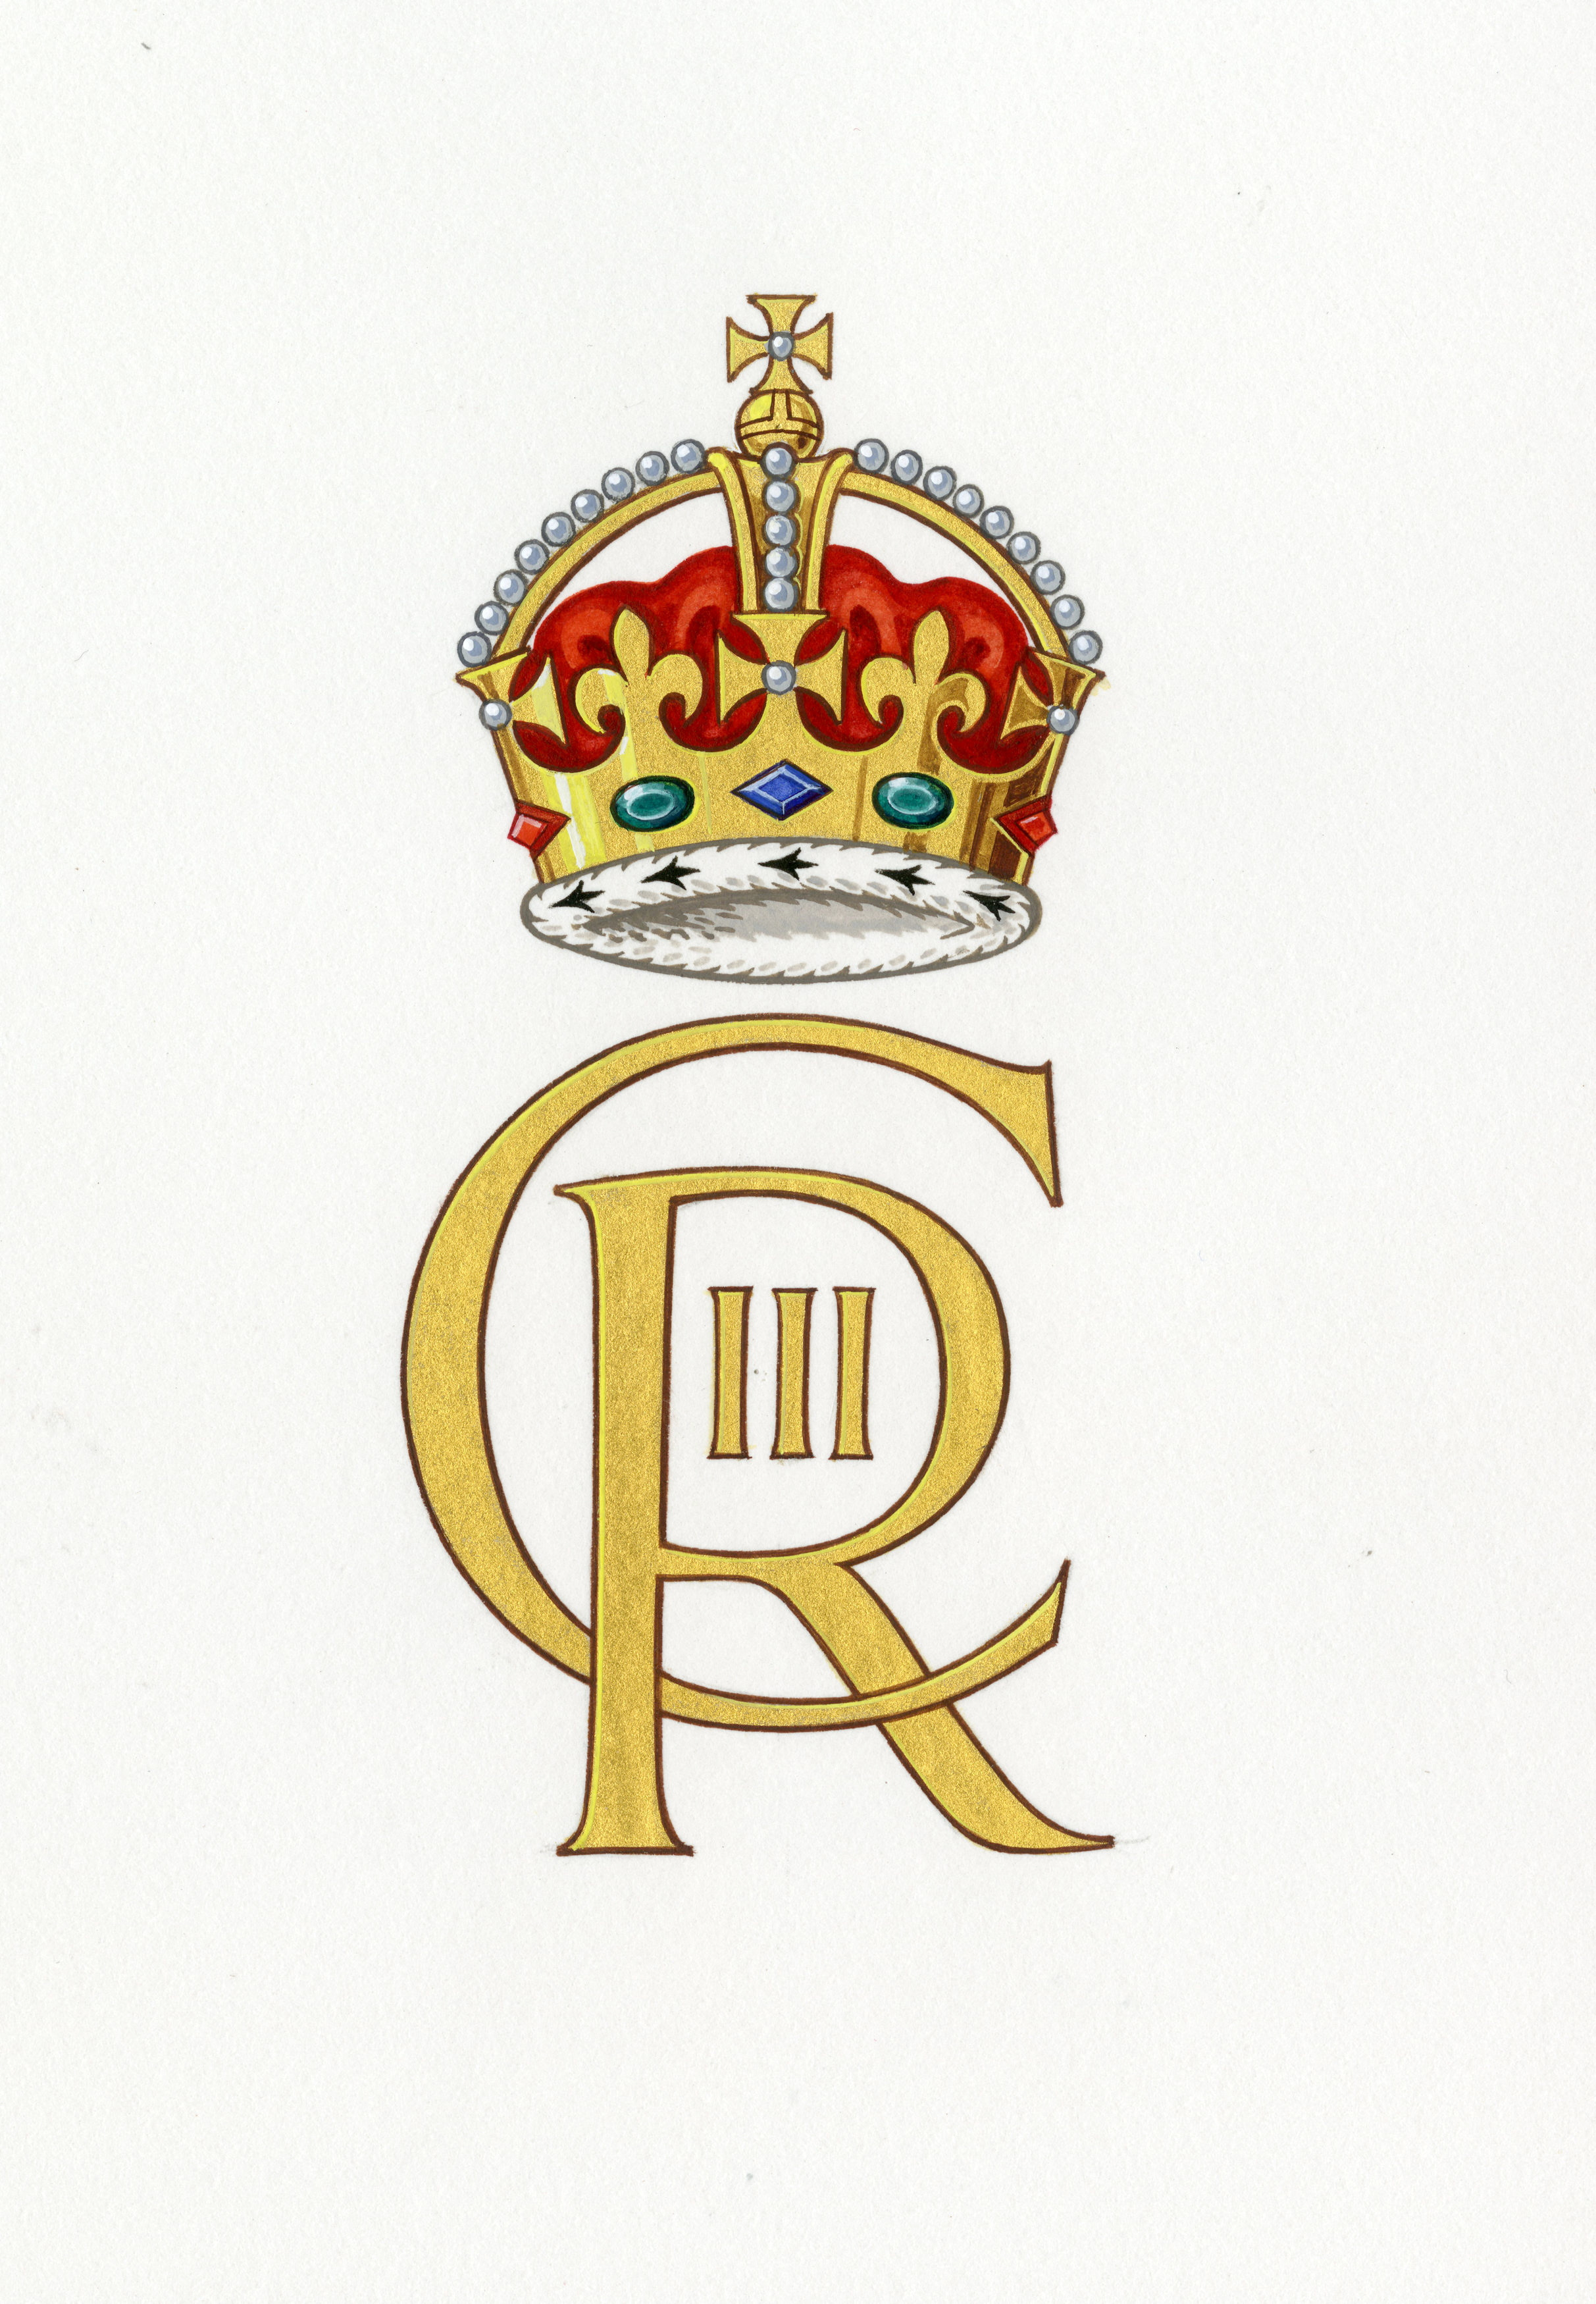 El nuevo monograma se utilizará en toda la Casa Real y en los departamentos gubernamentales (Buckingham Palace/Handout via REUTERS)